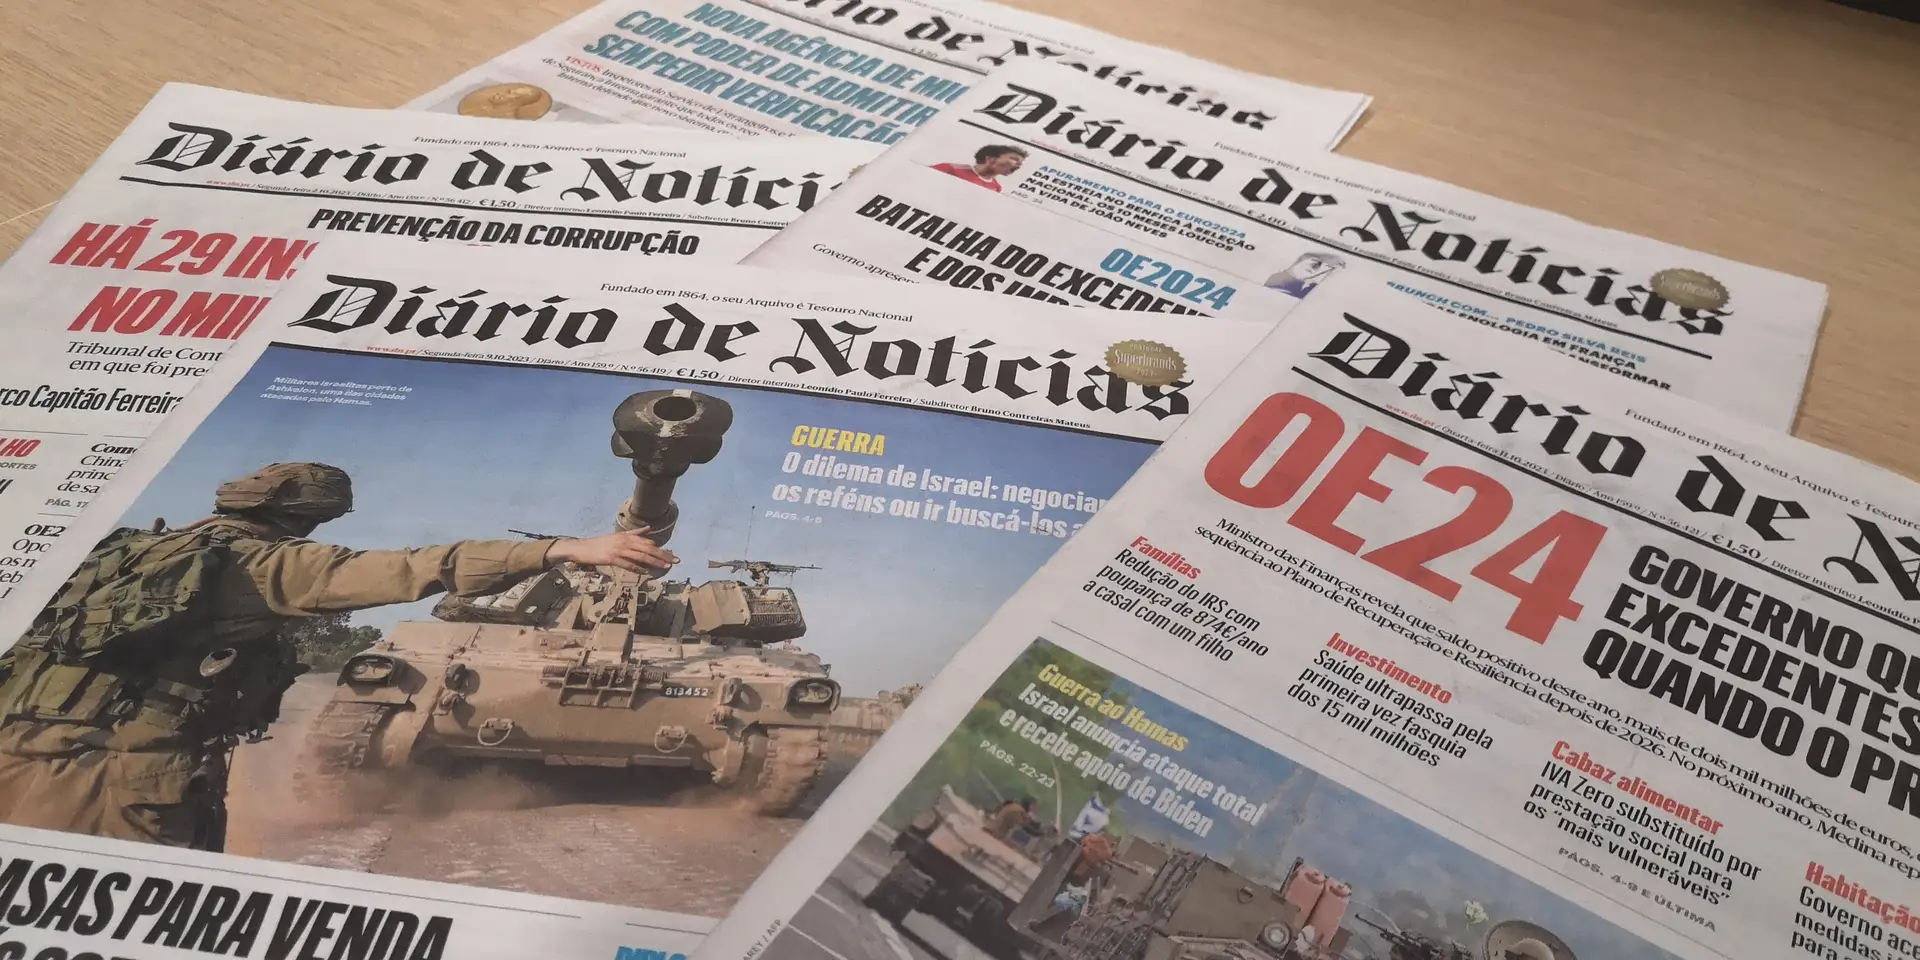 Medios globales: el director del Diário Notícias teme despidos, dice que nunca habló con la nueva administración